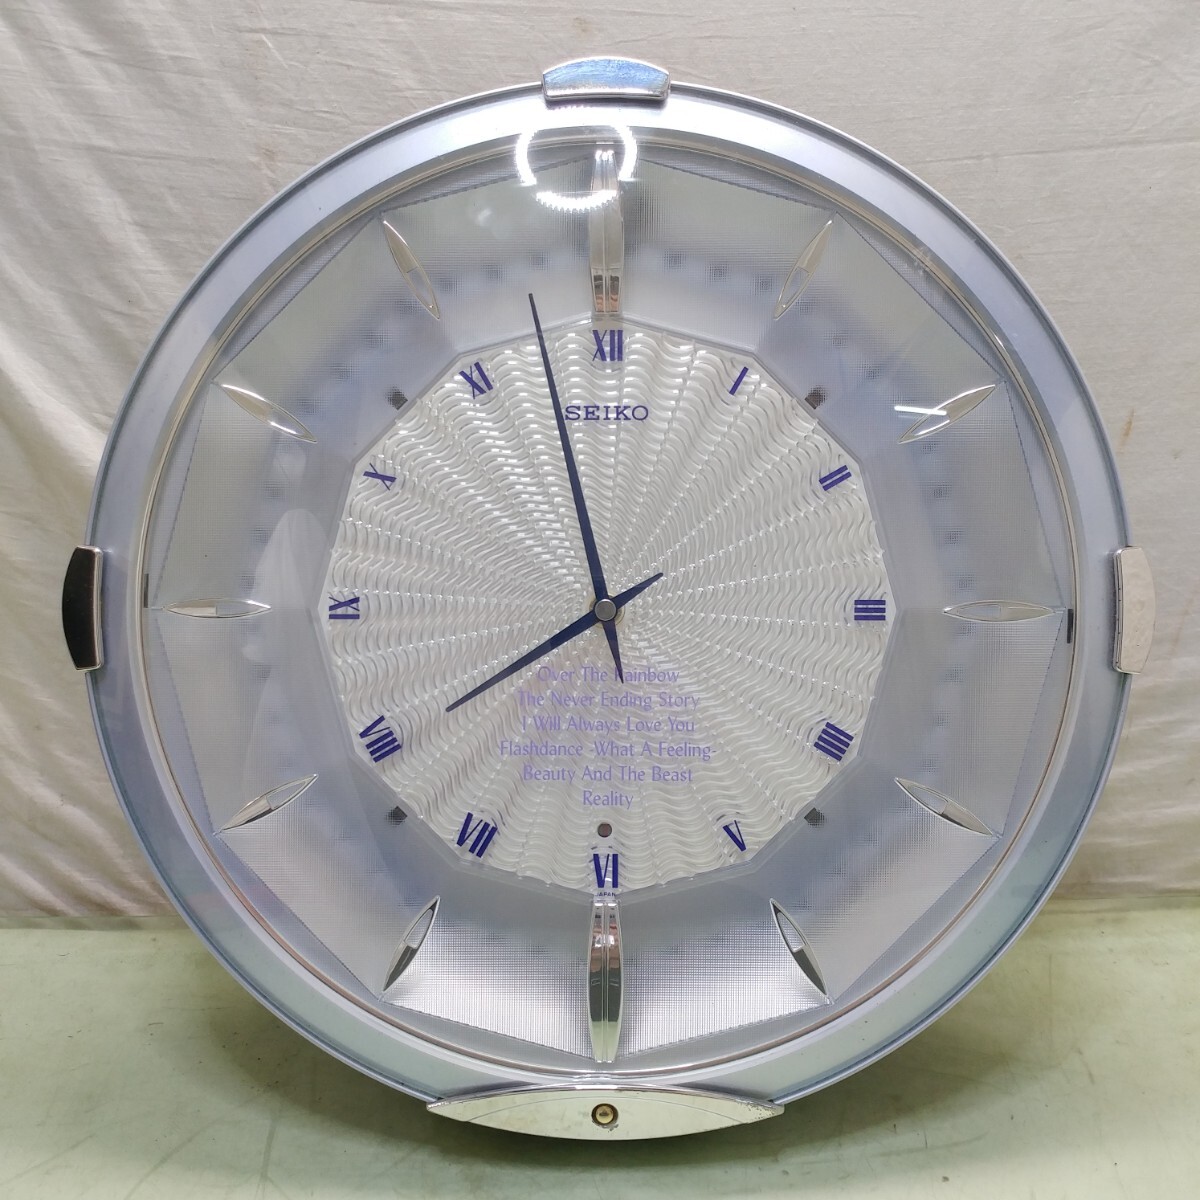 SEIKO/セイコー 掛け時計 ILLUMINA/イルミナ RE545L LED からくり時計 メロディー時計 アナログの画像1